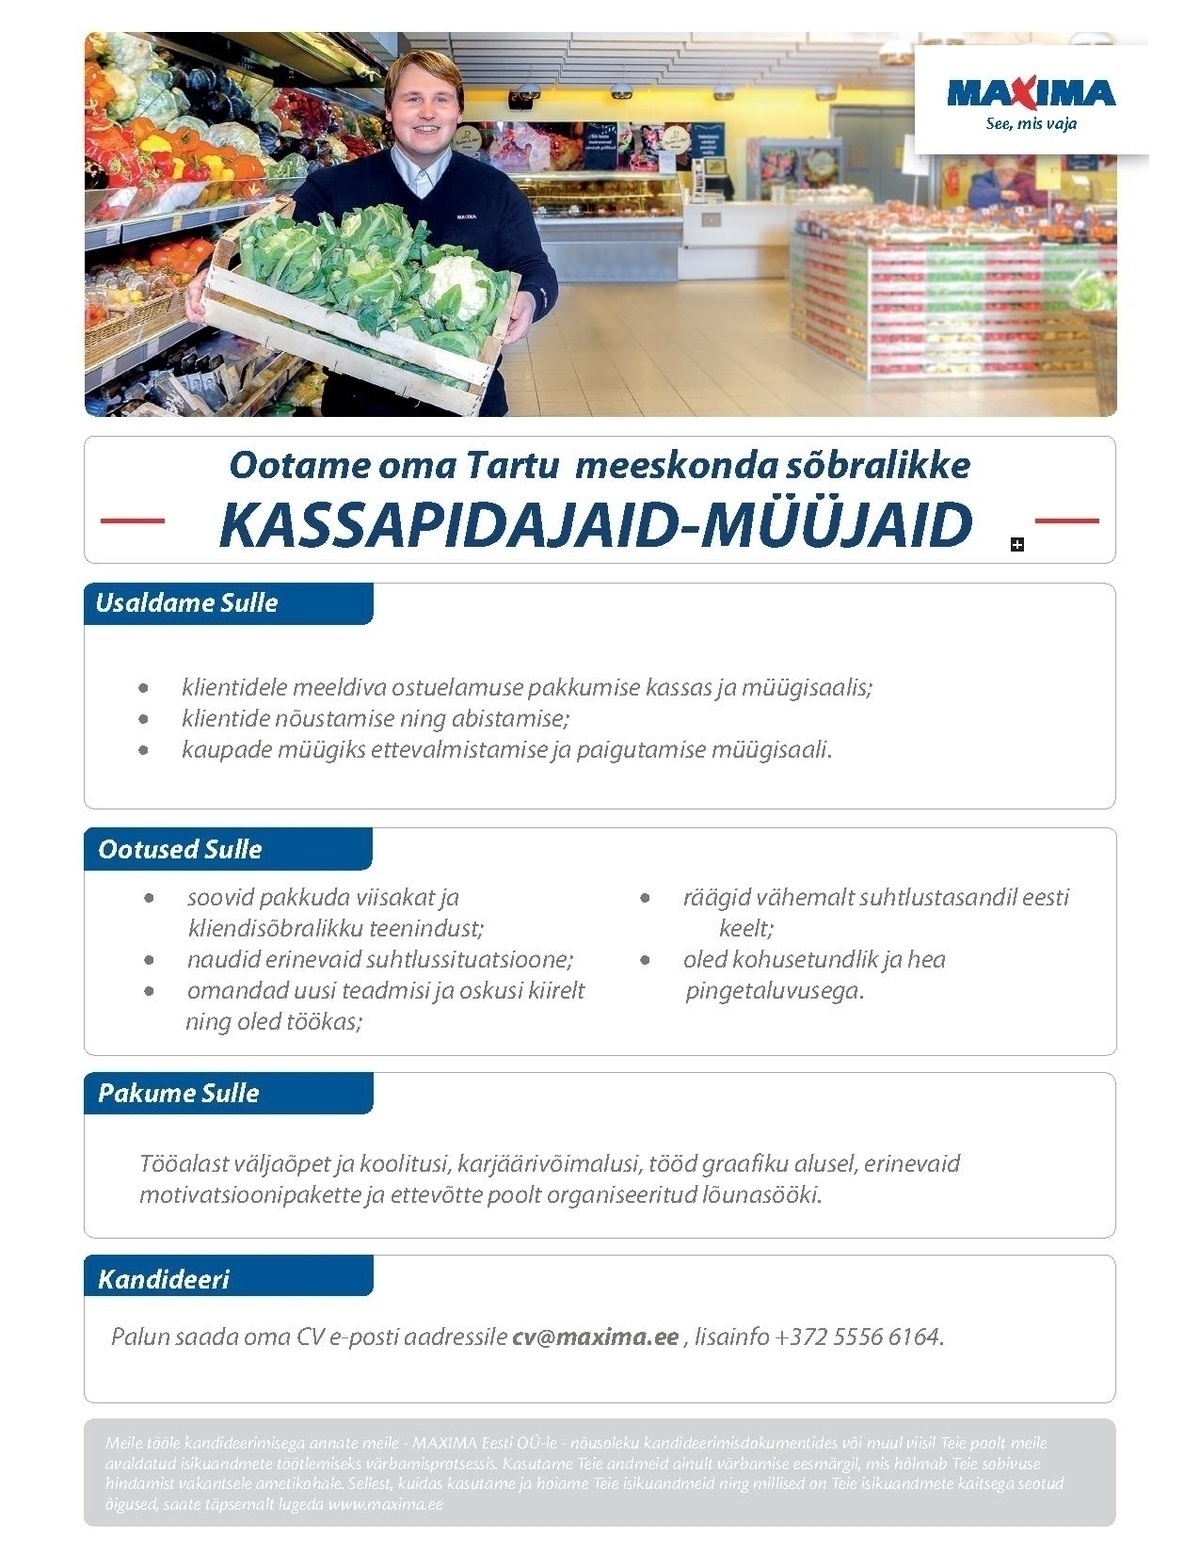 Maxima Eesti OÜ Kassapidaja-müüja Tartu Maximas